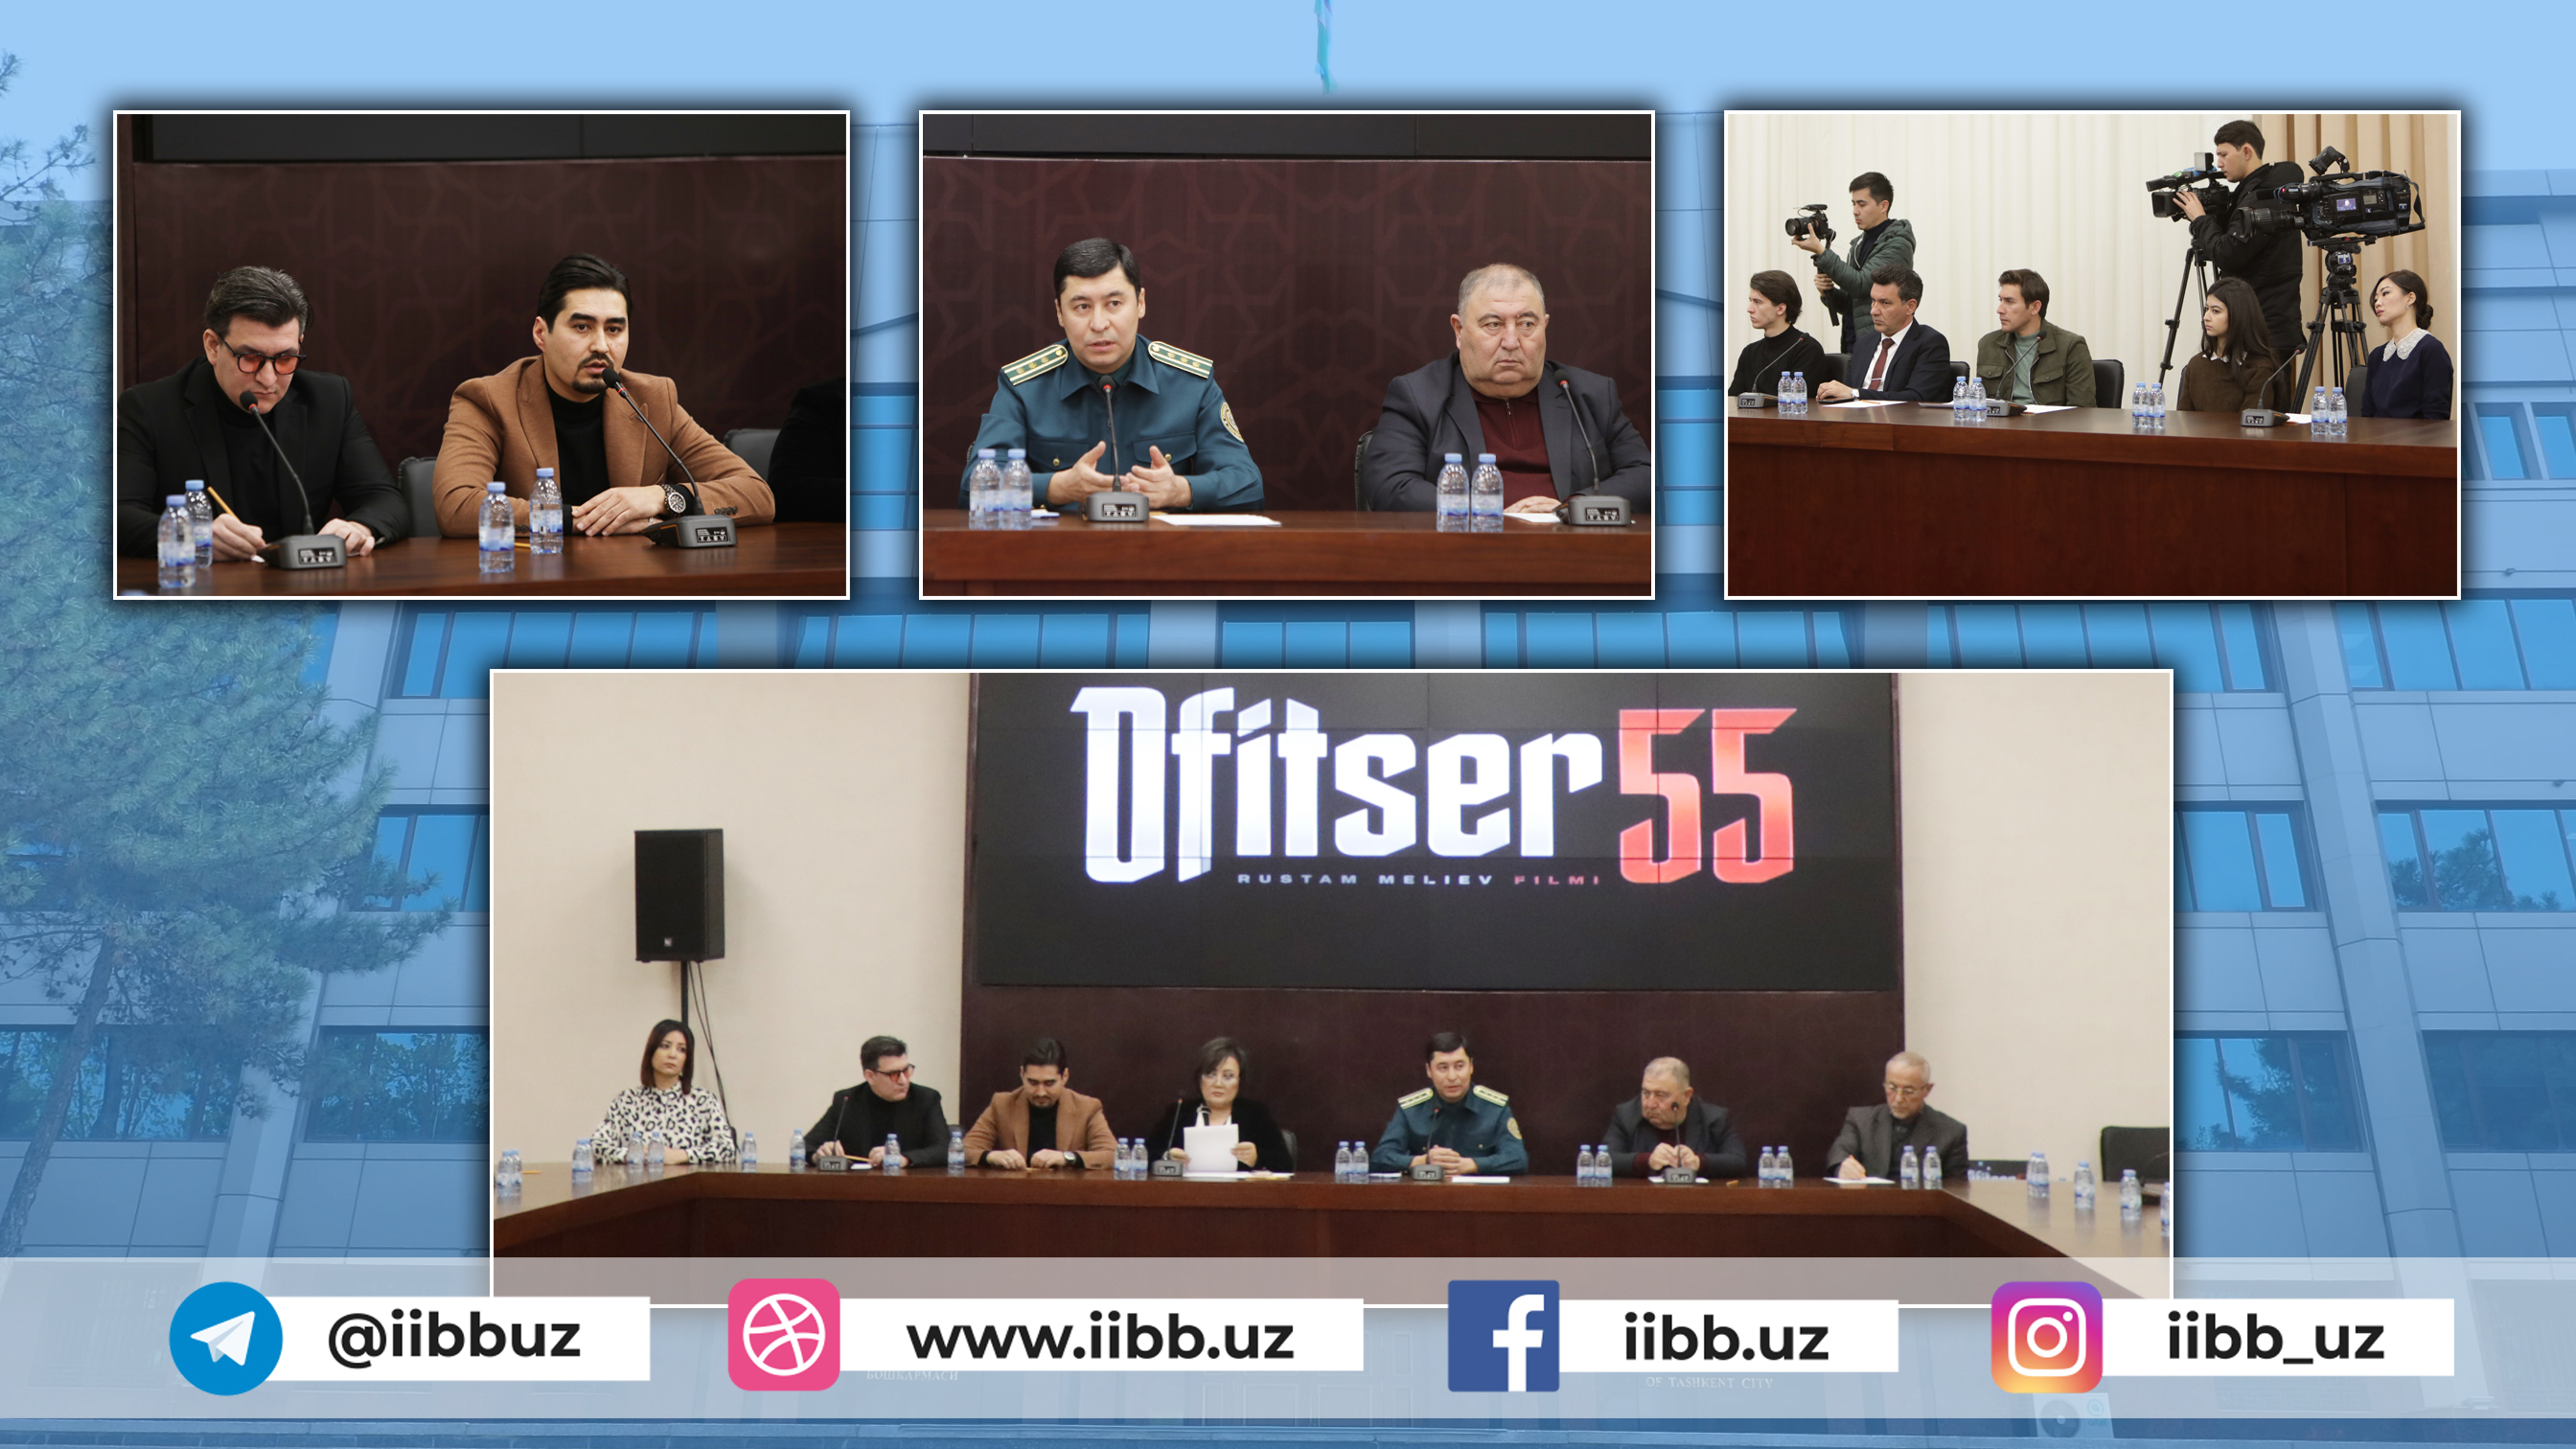 В Ташкенте состоялся брифинг с создателями художественного сериала “Офицер 55”